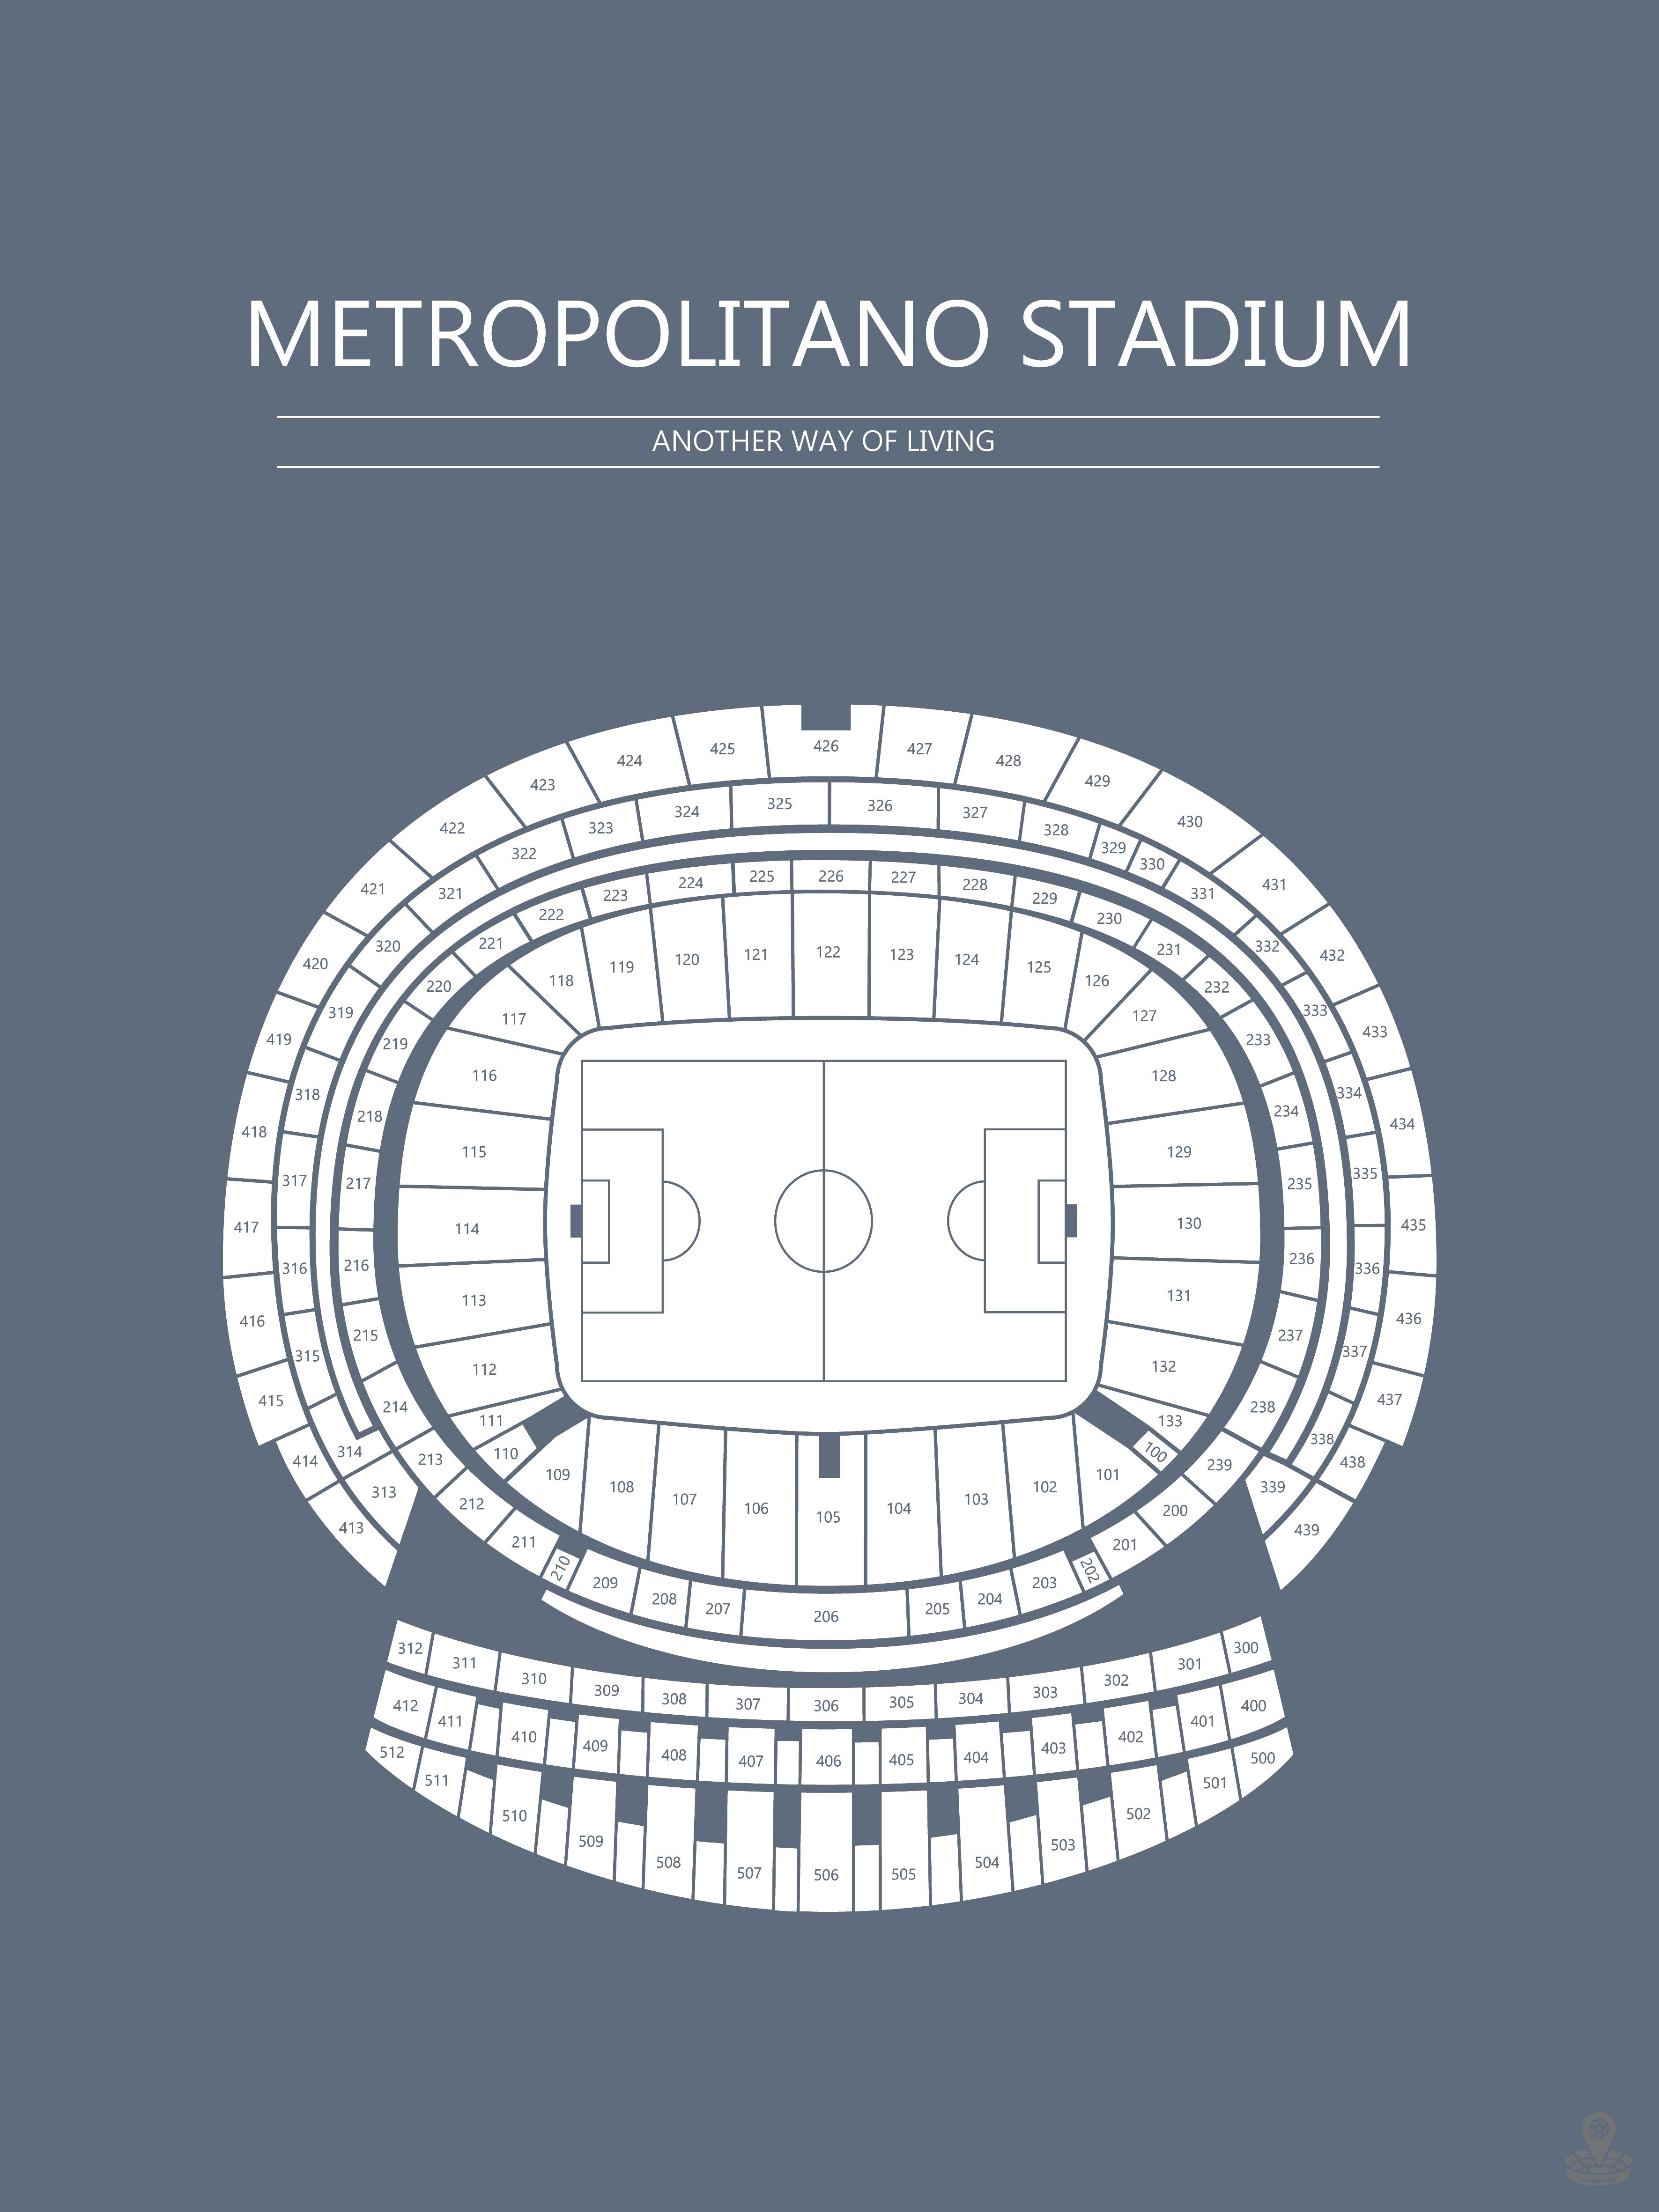 Fodbold plakat Atletico Madrid Metropolitano stadium Gråblå